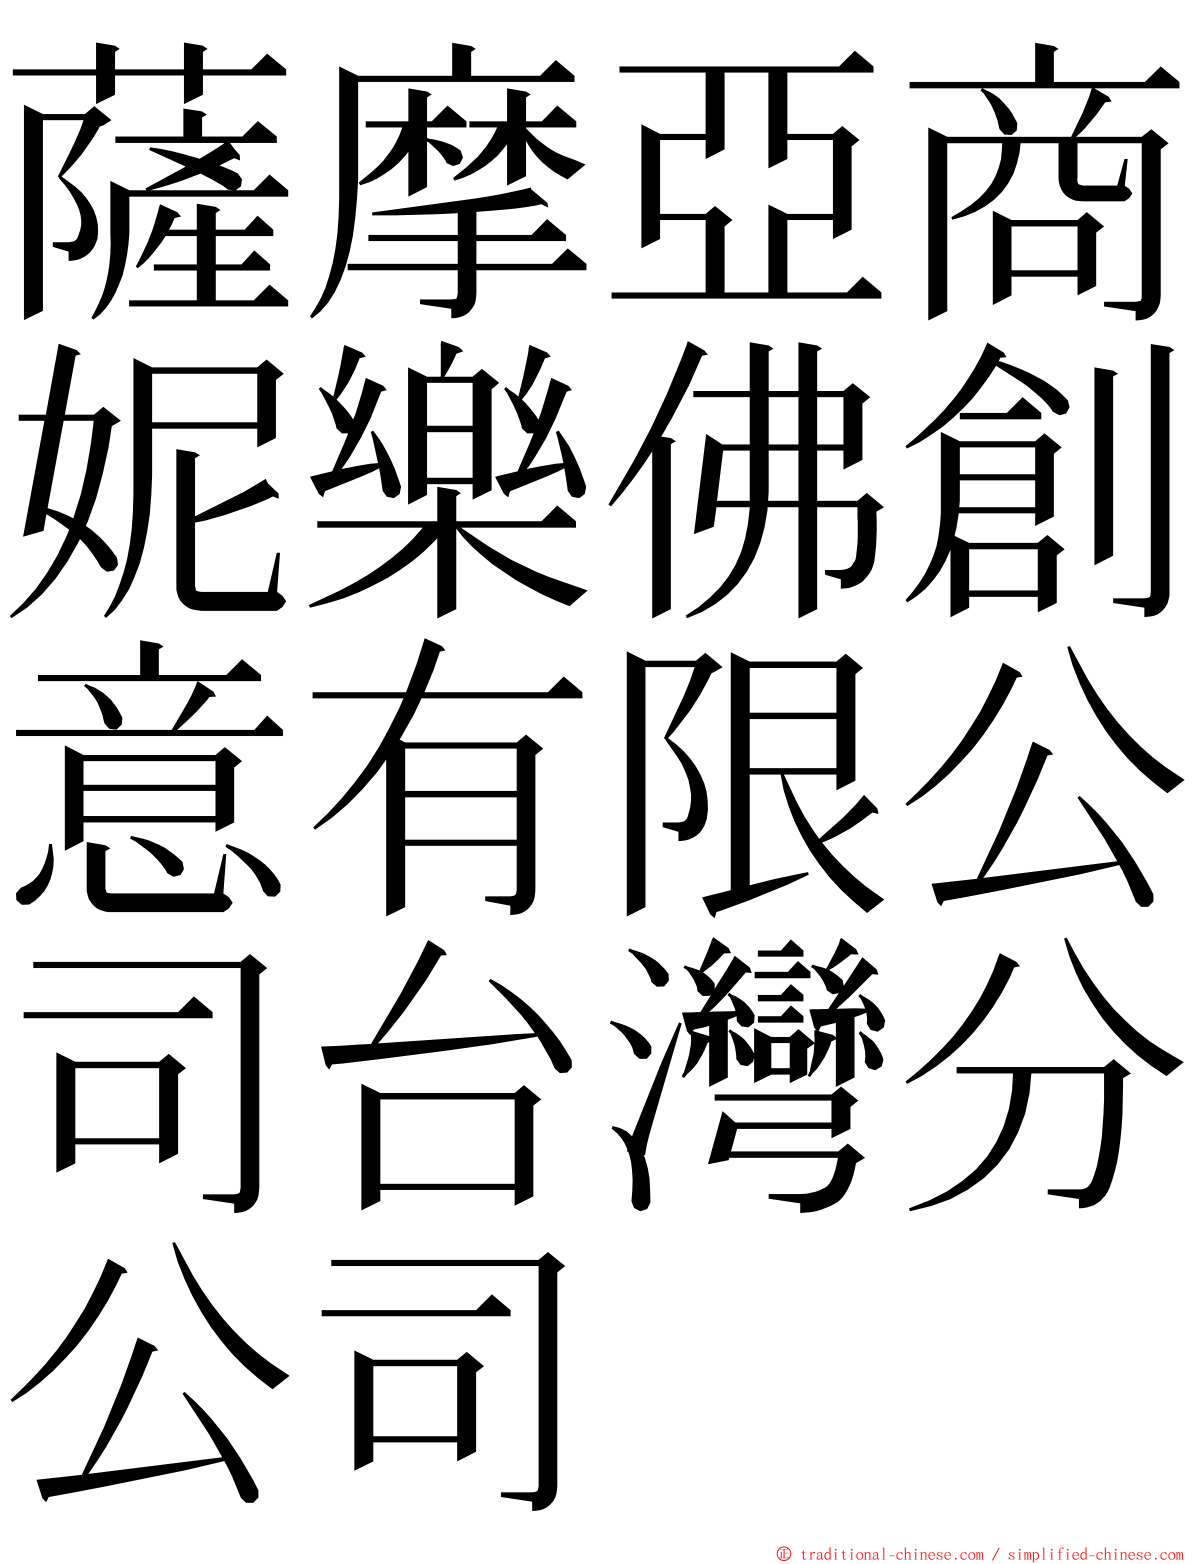 薩摩亞商妮樂佛創意有限公司台灣分公司 ming font